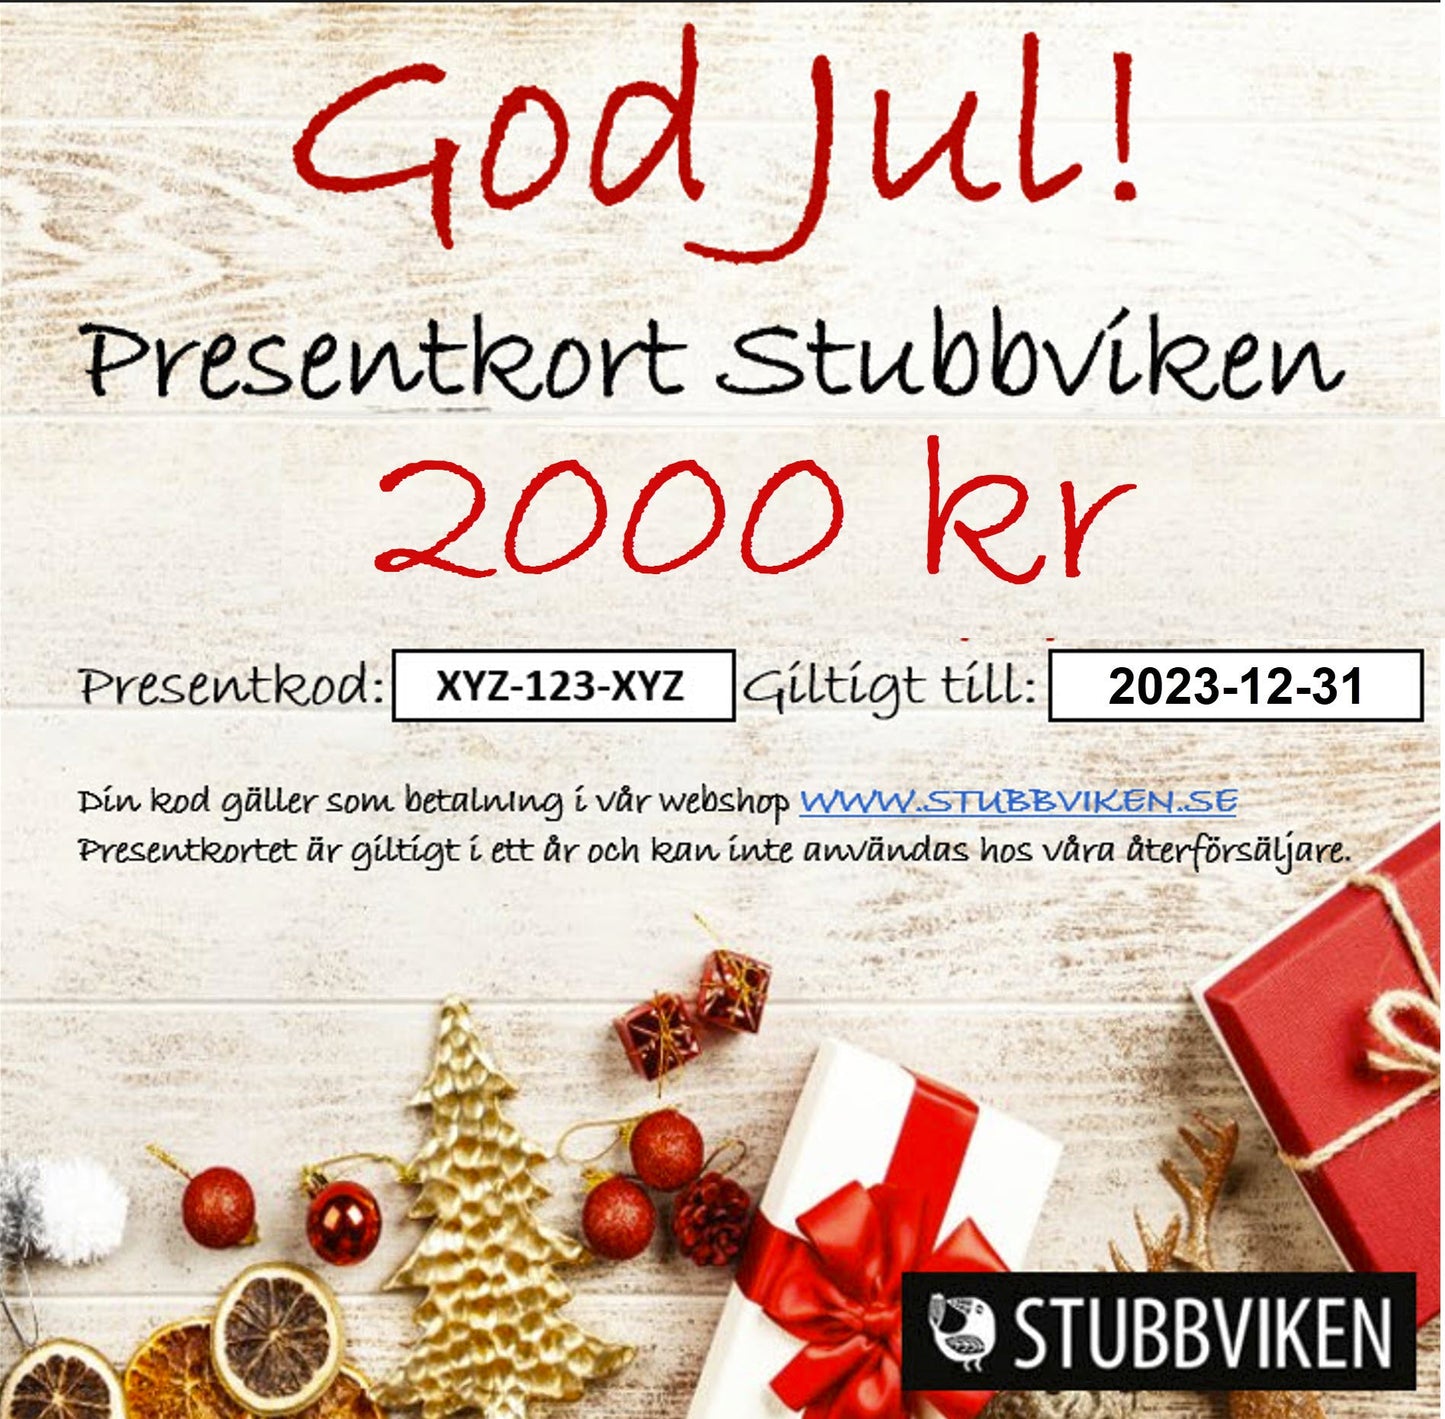 Presentkort Stubbviken - Skickas till köparens e-mail adress